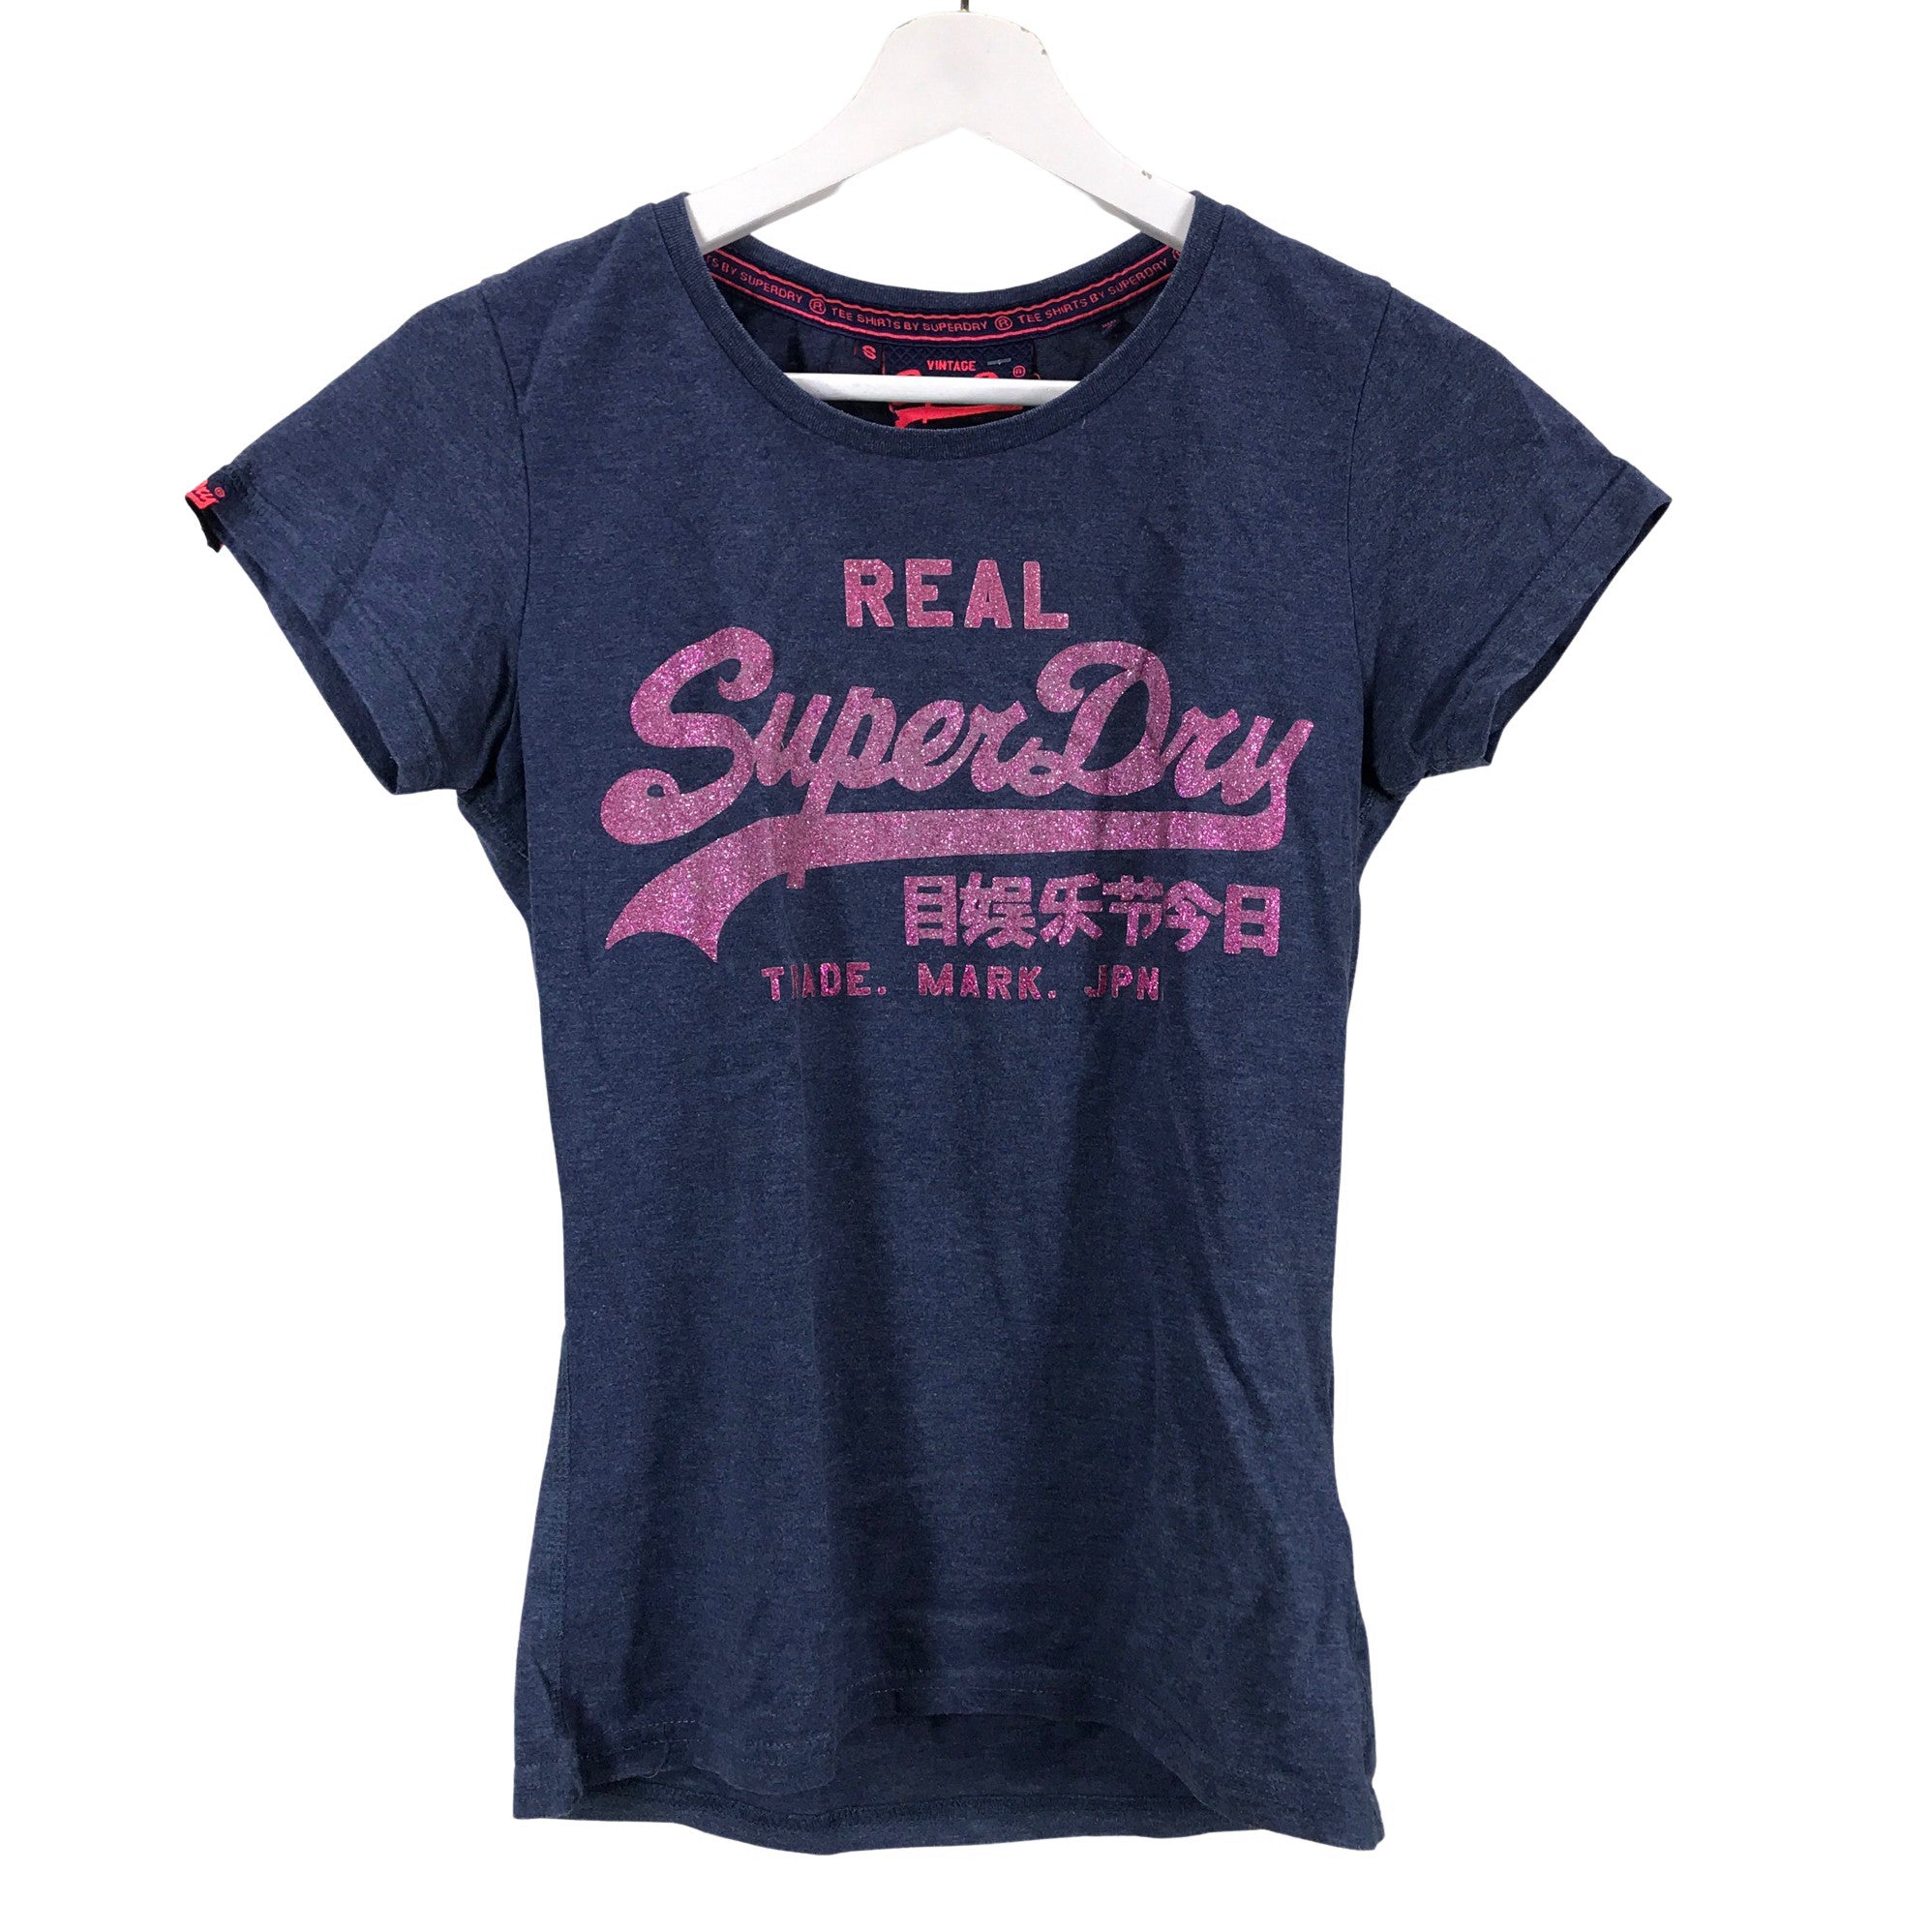 biograf anekdote Tårer Women's Superdry T-shirt, size 36 (Blue) | Emmy